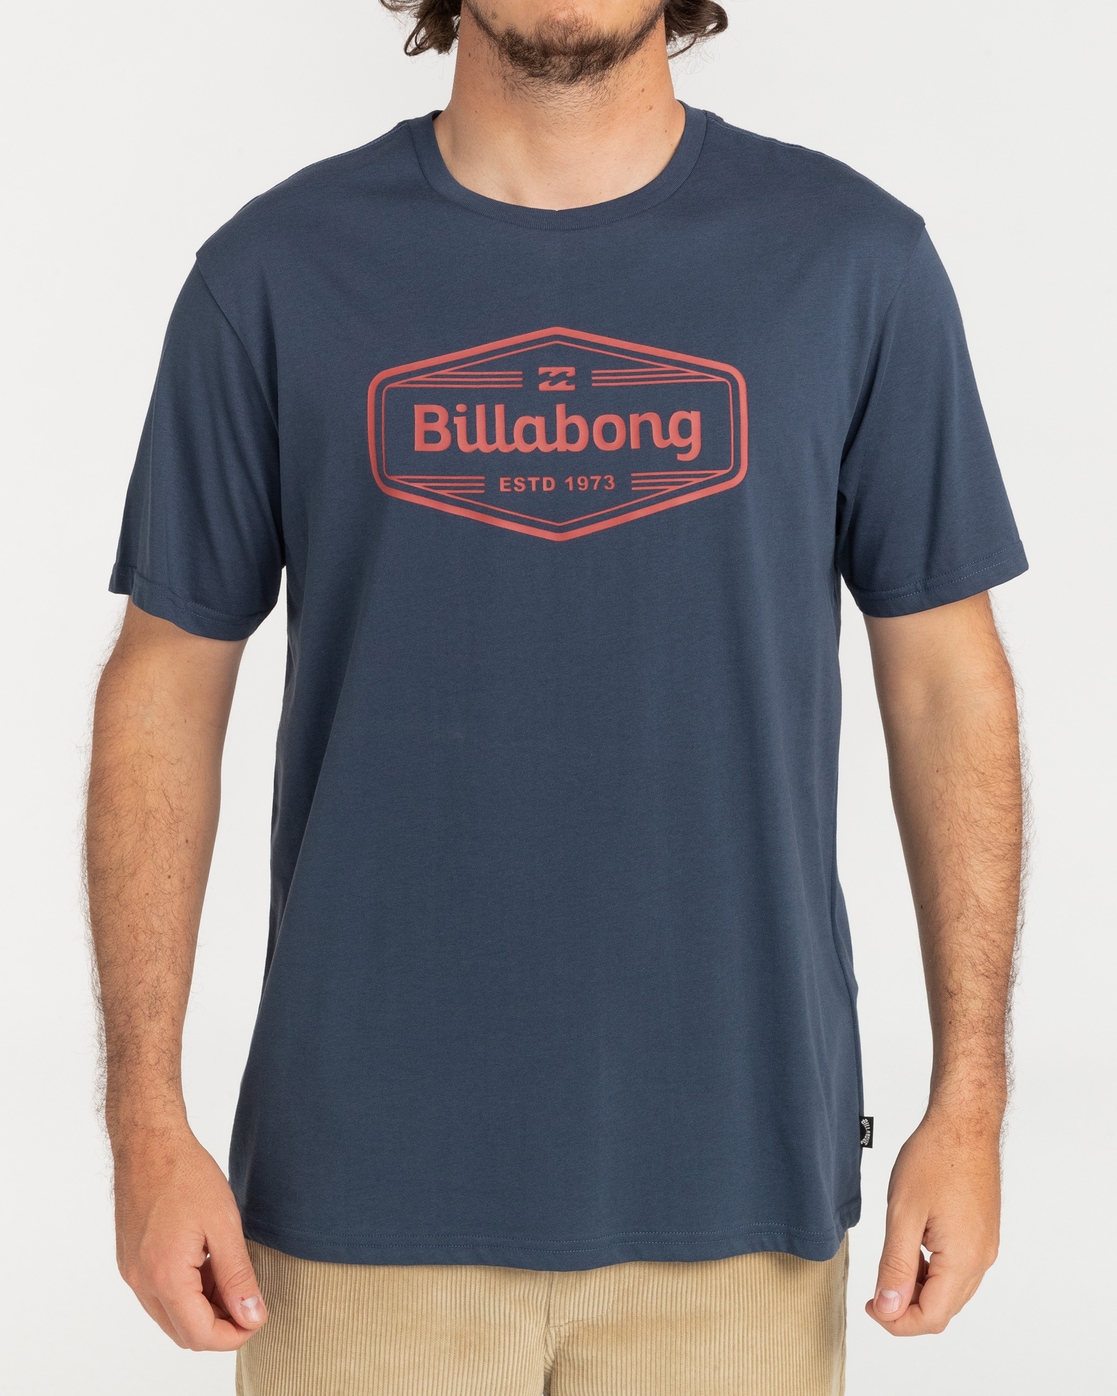 Billabong T-Shirt »Trademark« von Billabong